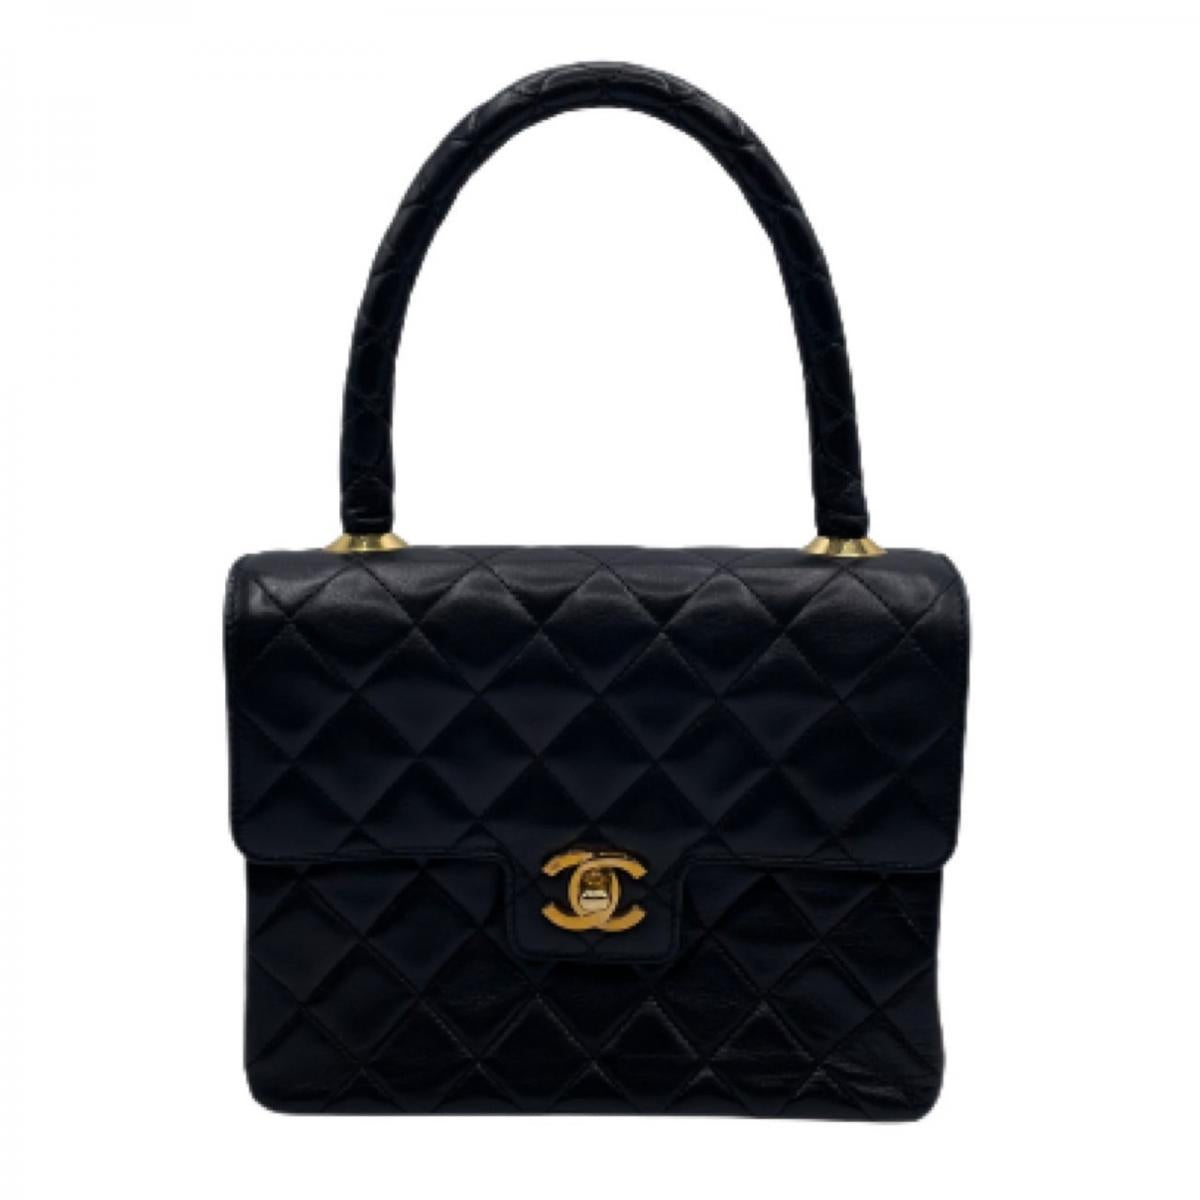 Leather Matelasse Handbag